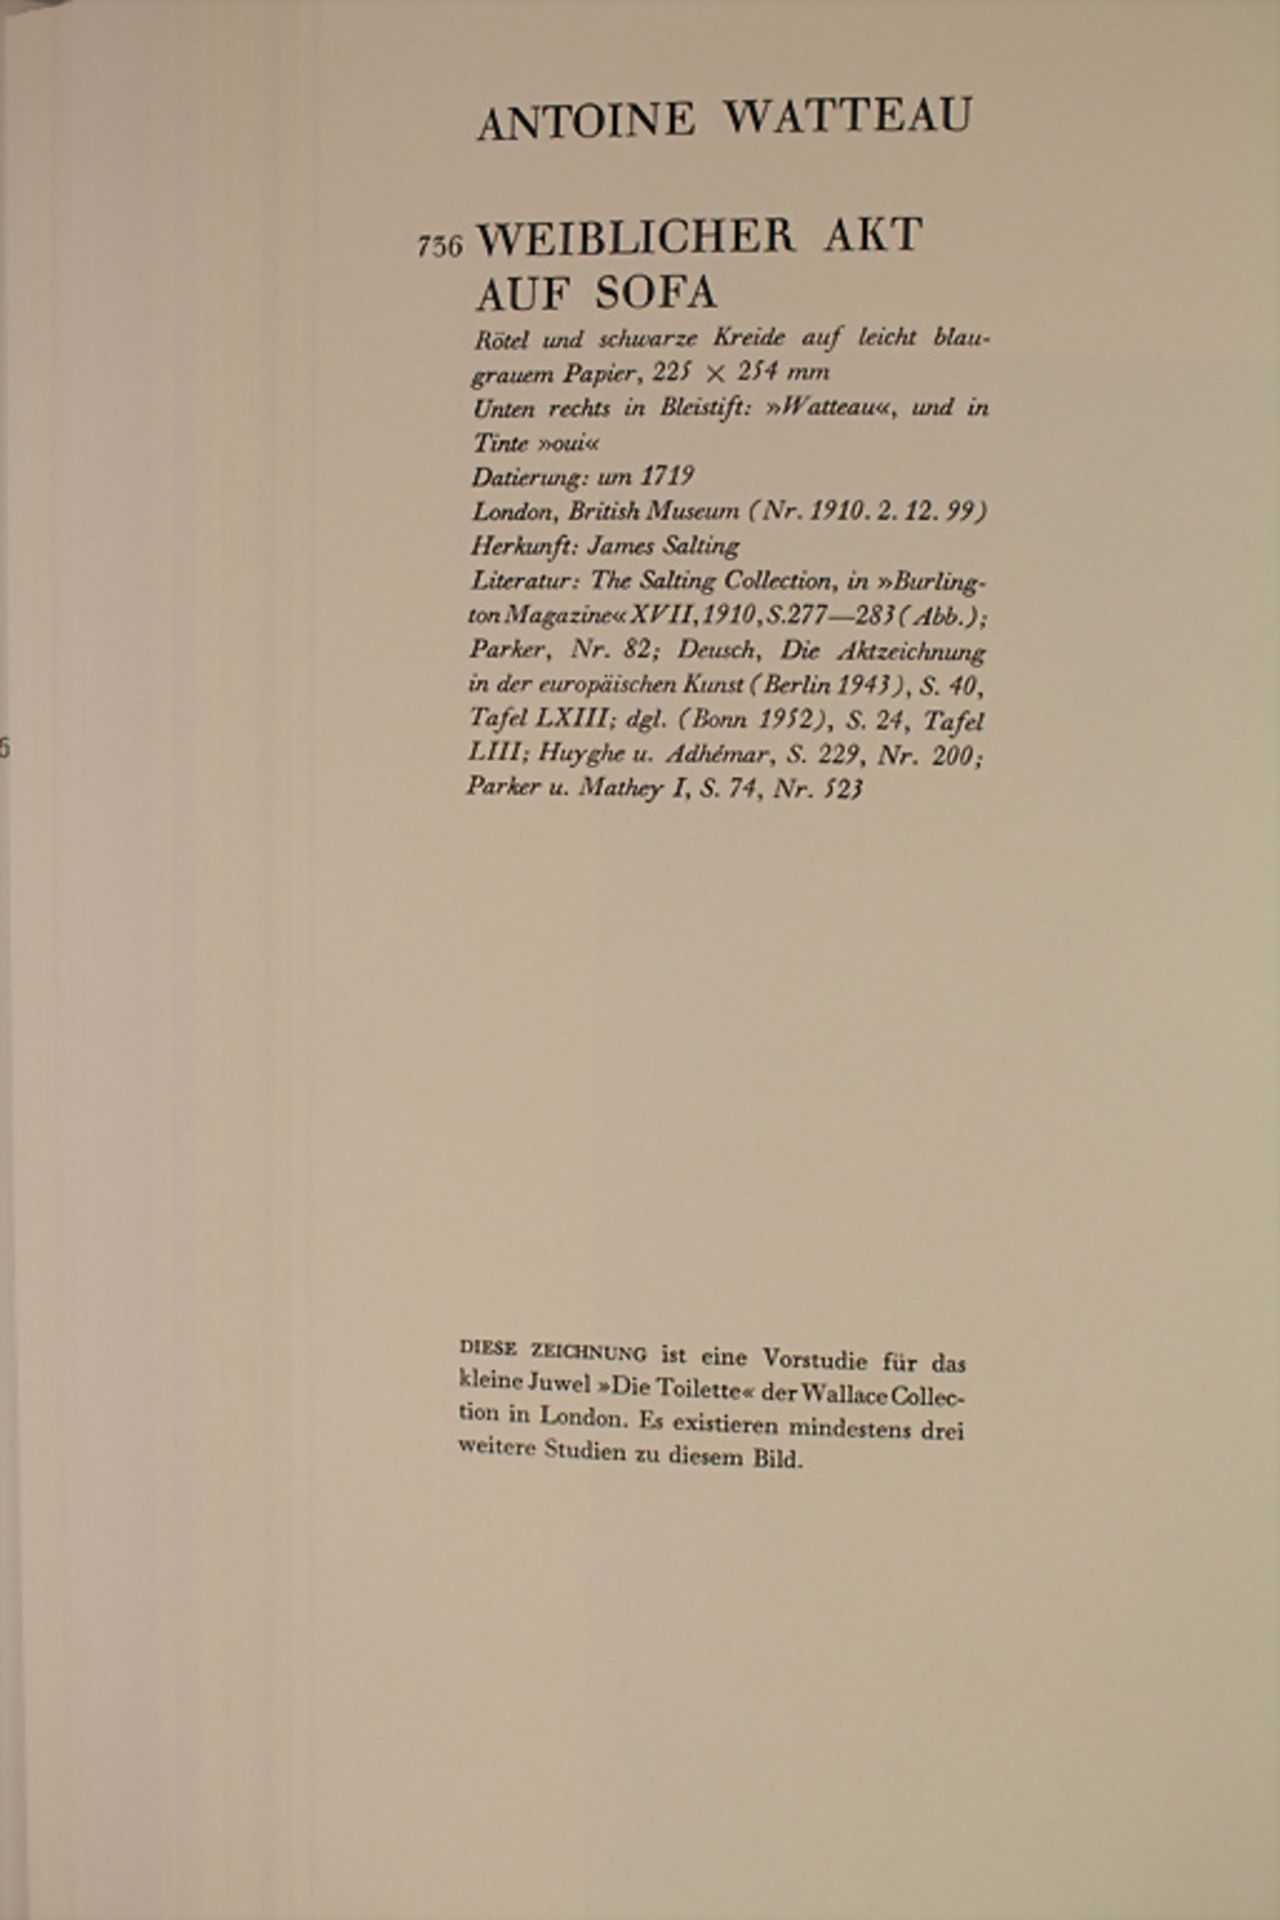 Ira Moskowitz (Hg.): 'Kindlers Meisterzeichnungen aller Epochen', 1962 - Image 5 of 6